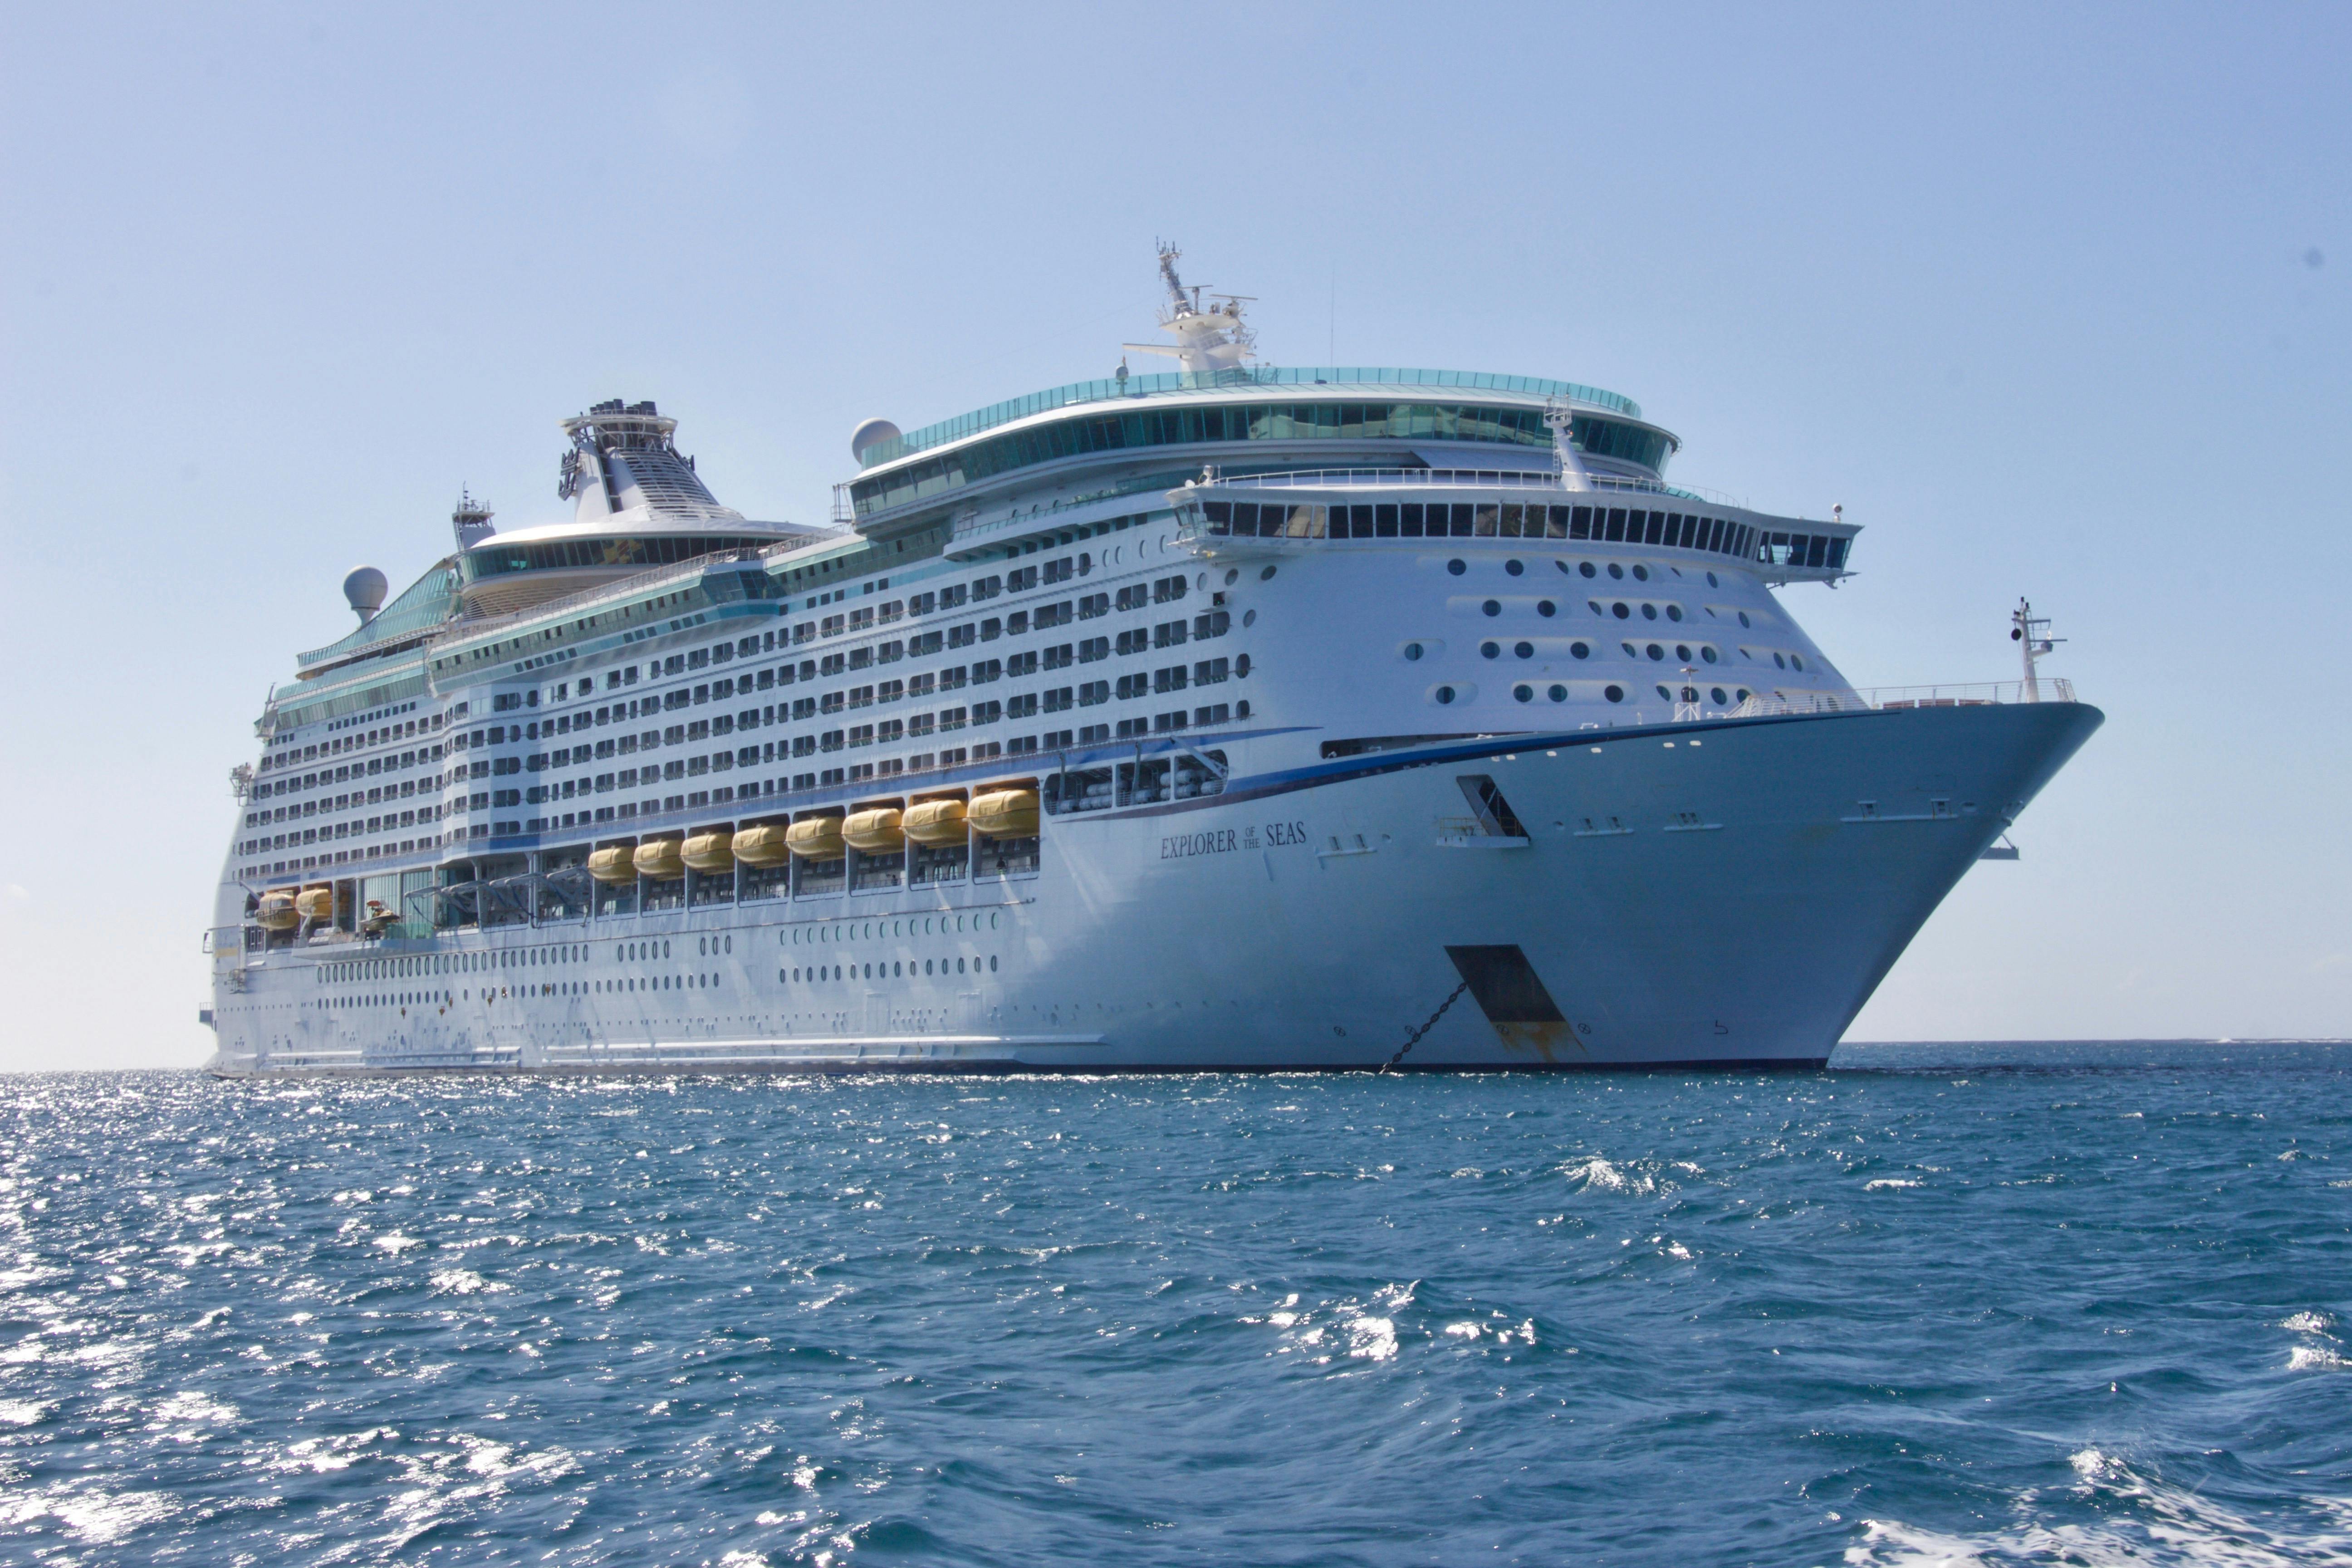 cruise ship images free